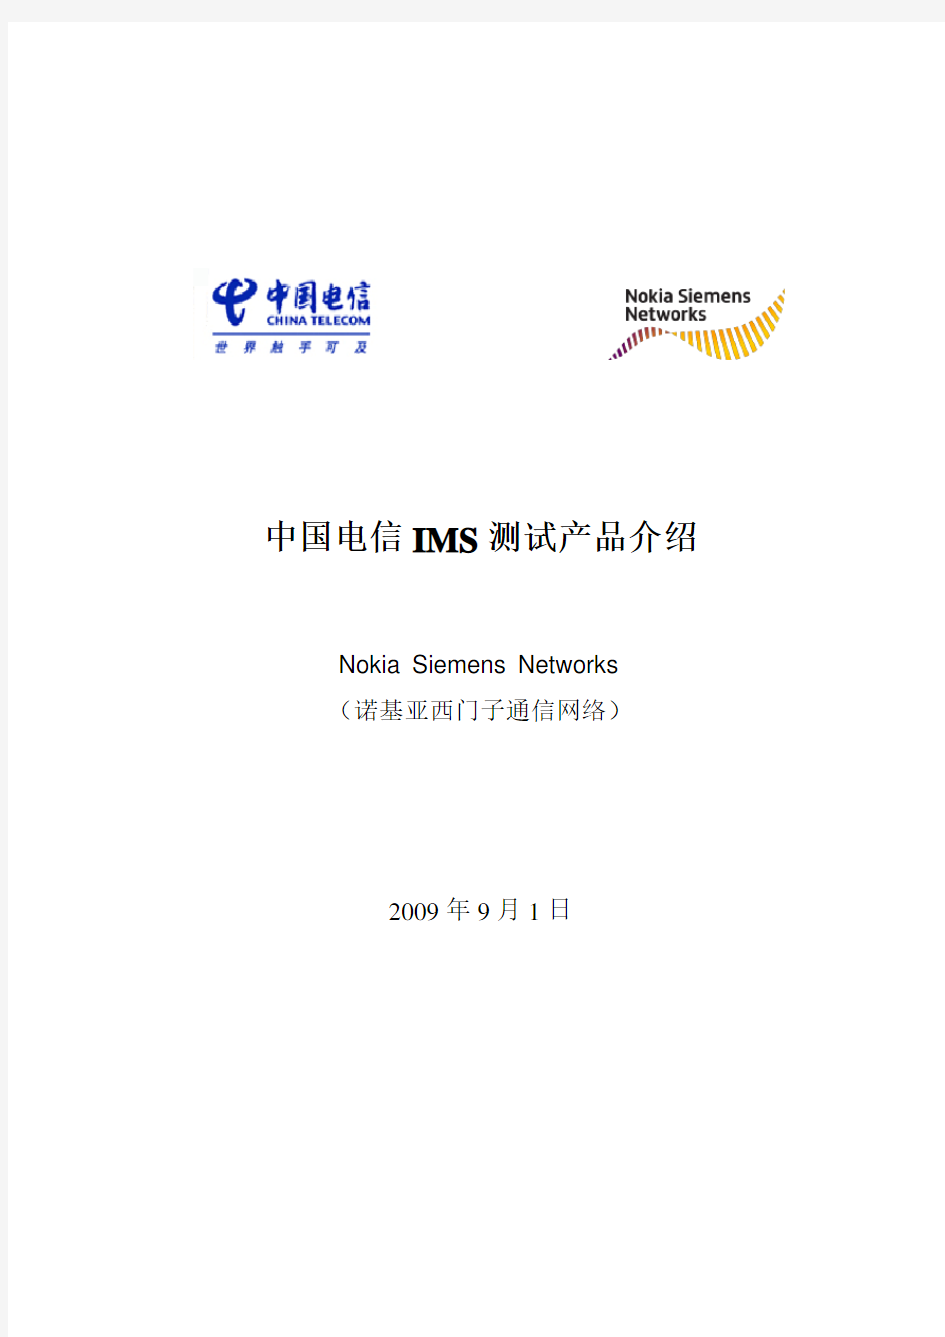 中国电信IMS测试产品介绍_20090902